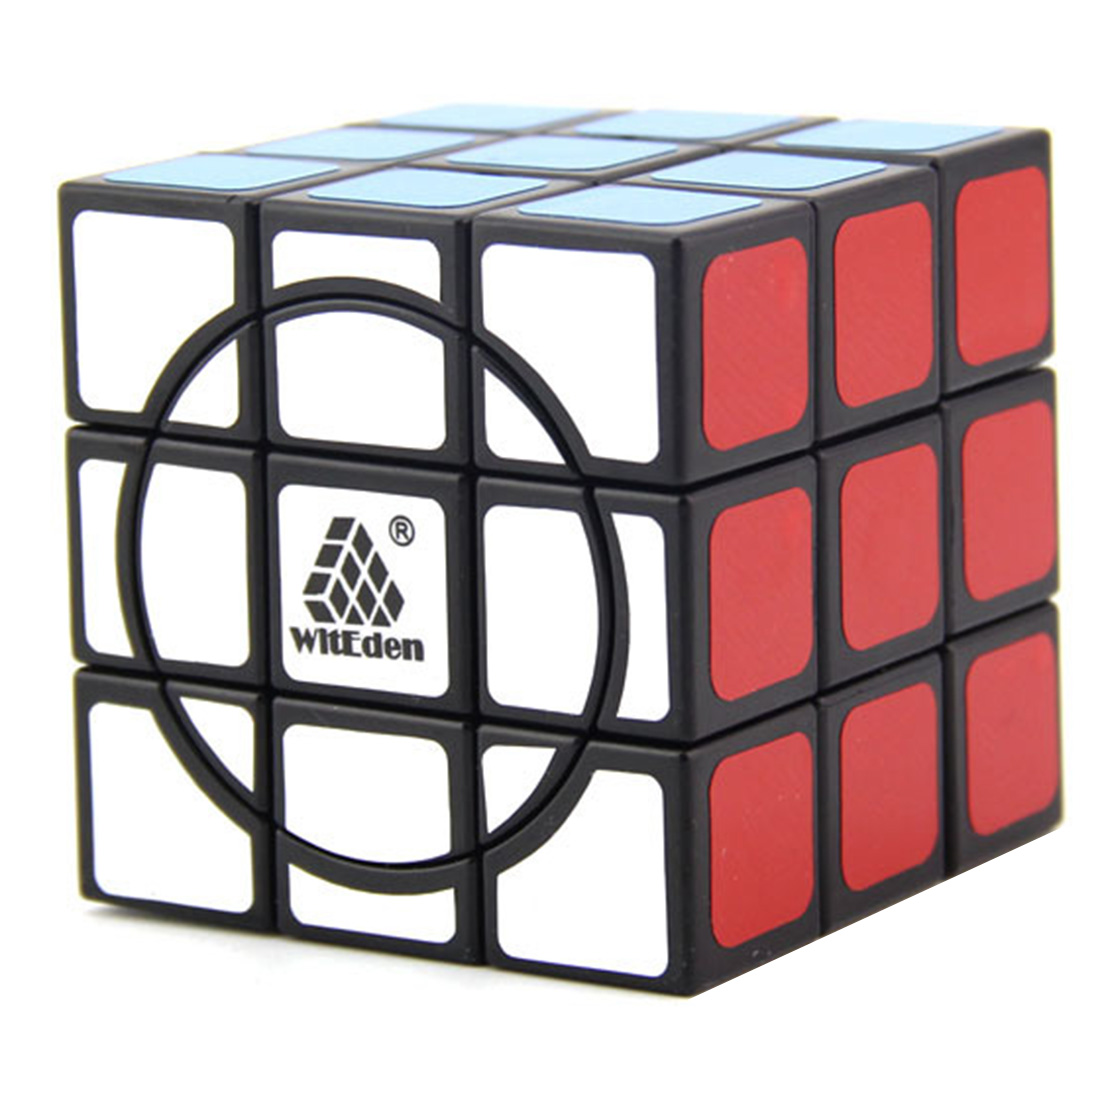 WitEden 3x3 Super Crazy Magic Cube (Black)